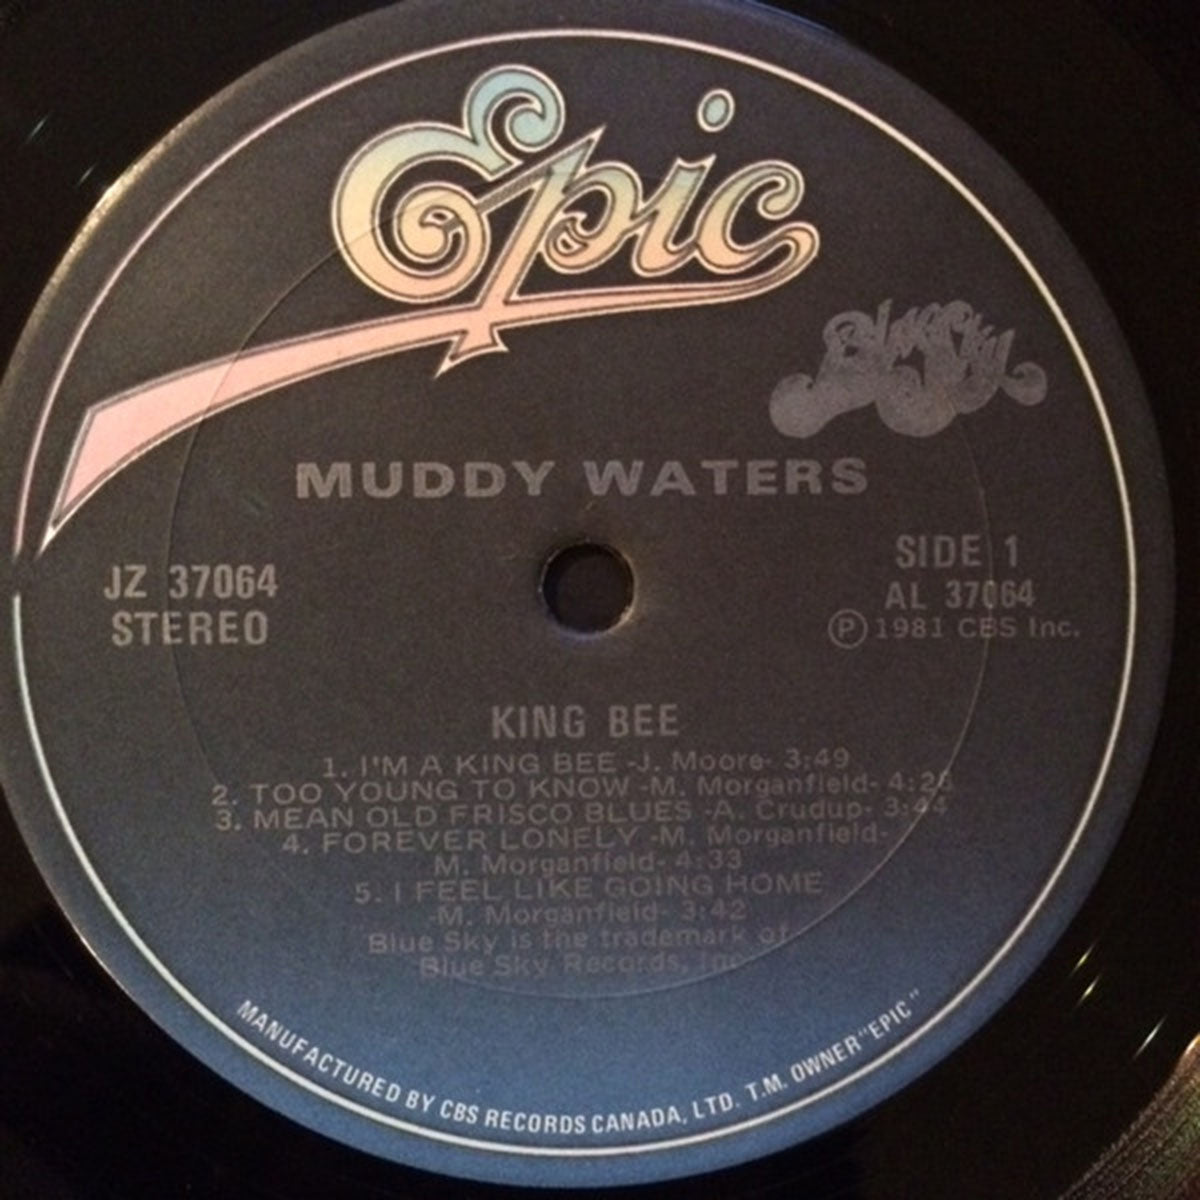 Muddy Waters – King Bee - 1981